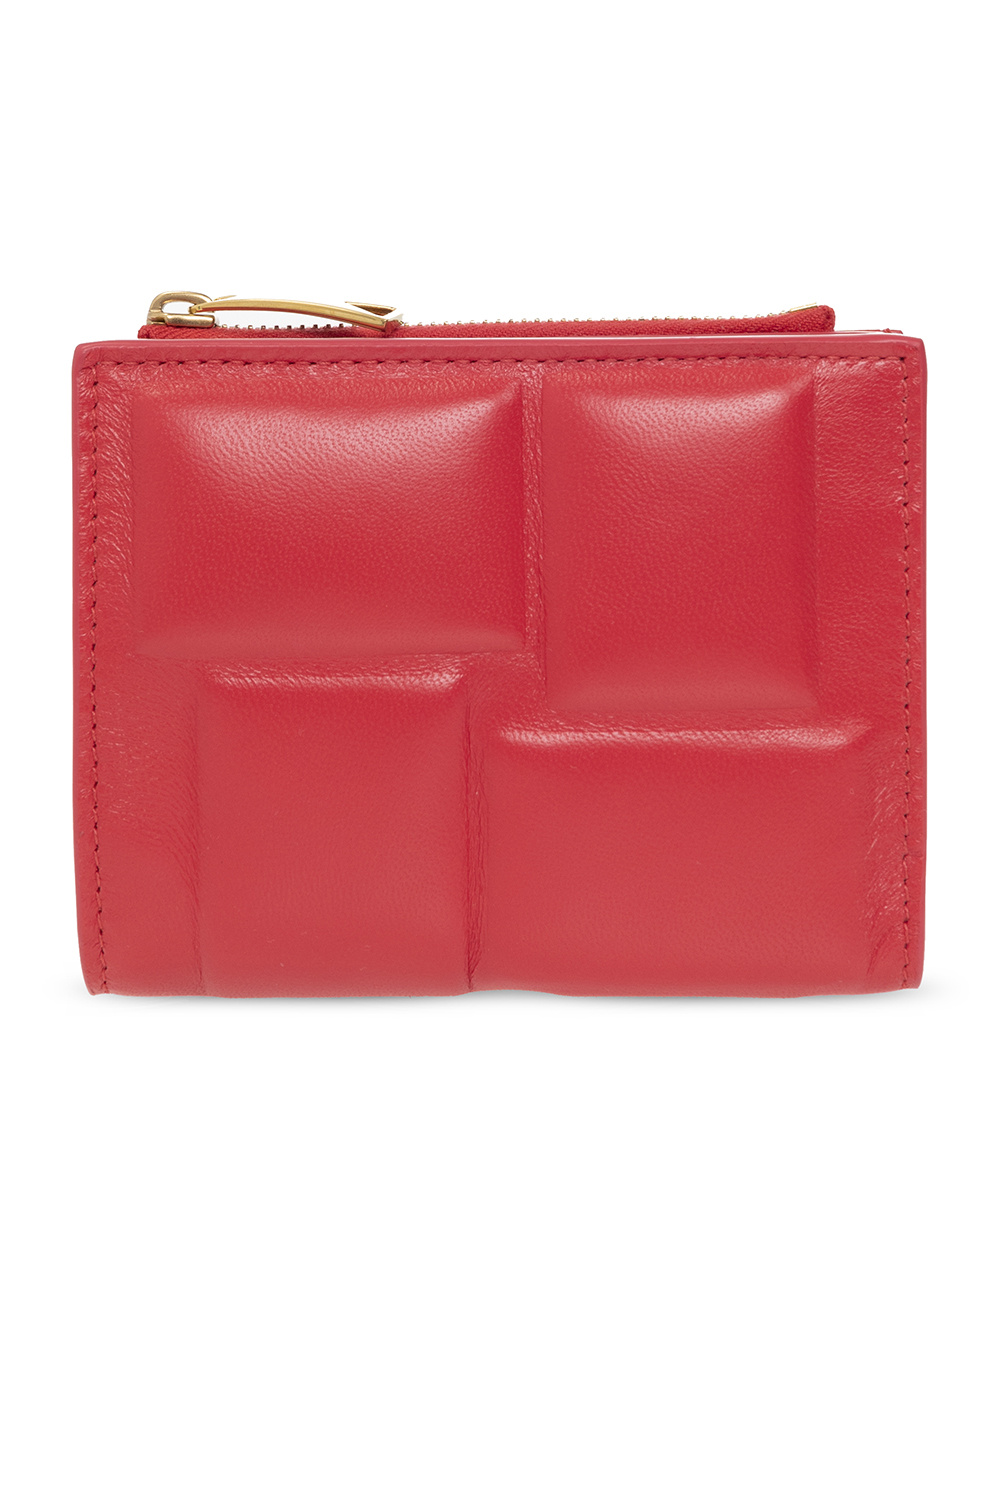 bottega coat Veneta Leather wallet